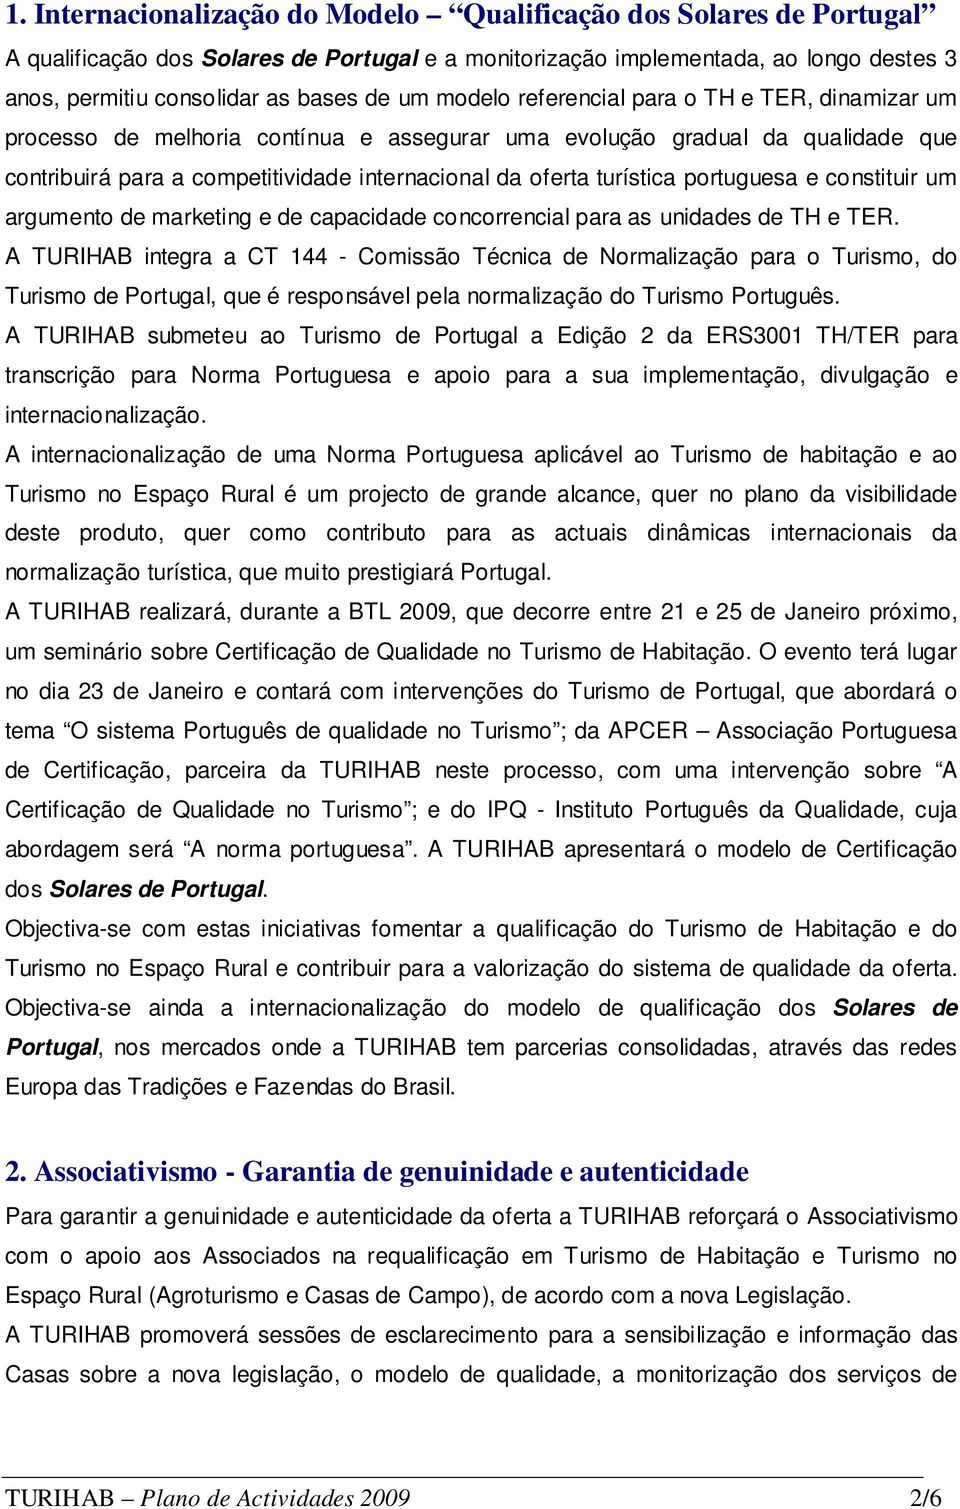 portuguesa e constituir um argumento de marketing e de capacidade concorrencial para as unidades de TH e TER.